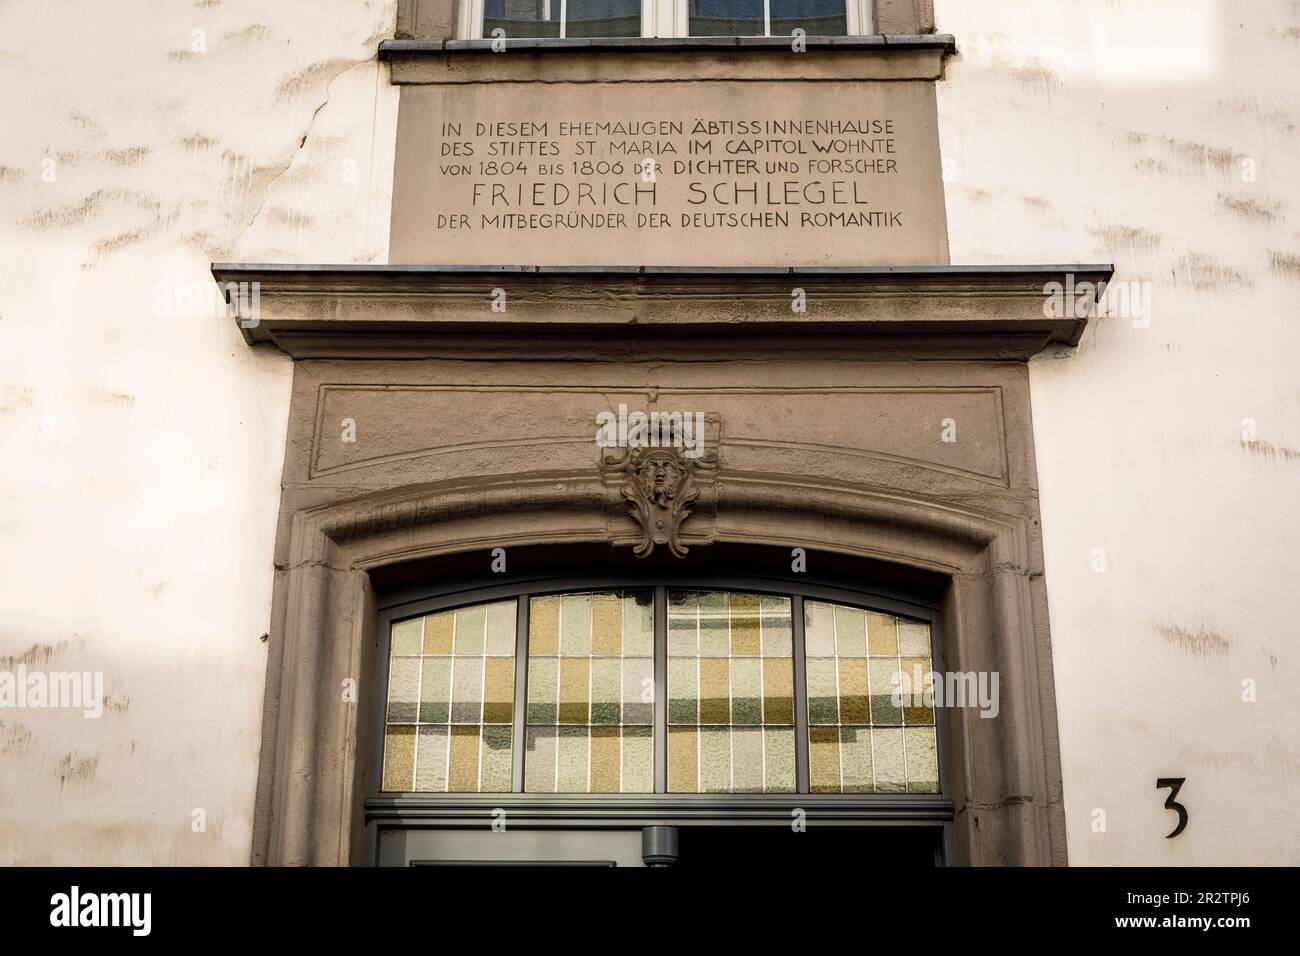 Im Haus dieses ehemaligen Abts lebte der Dichter Friedrich Schlegel von 1804 bis 1806, Mitbegründer der Deutschen Romantik, Köln. In diesem ehema Stockfoto